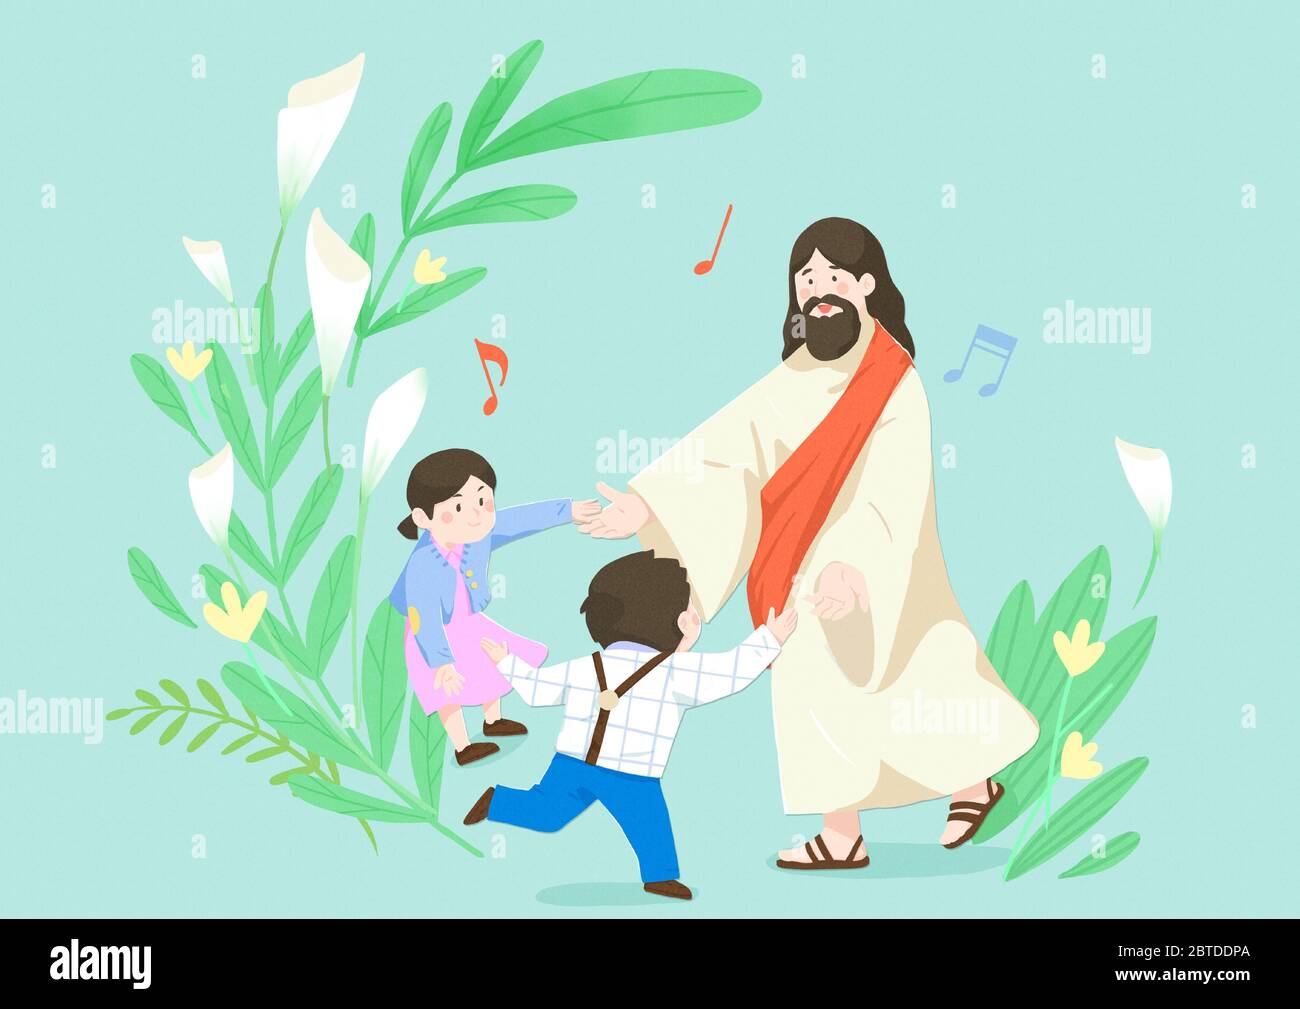 Concetto di religione cattolica, Gesù con le persone cartone animato  illustrazione cristiana 007 Immagine e Vettoriale - Alamy